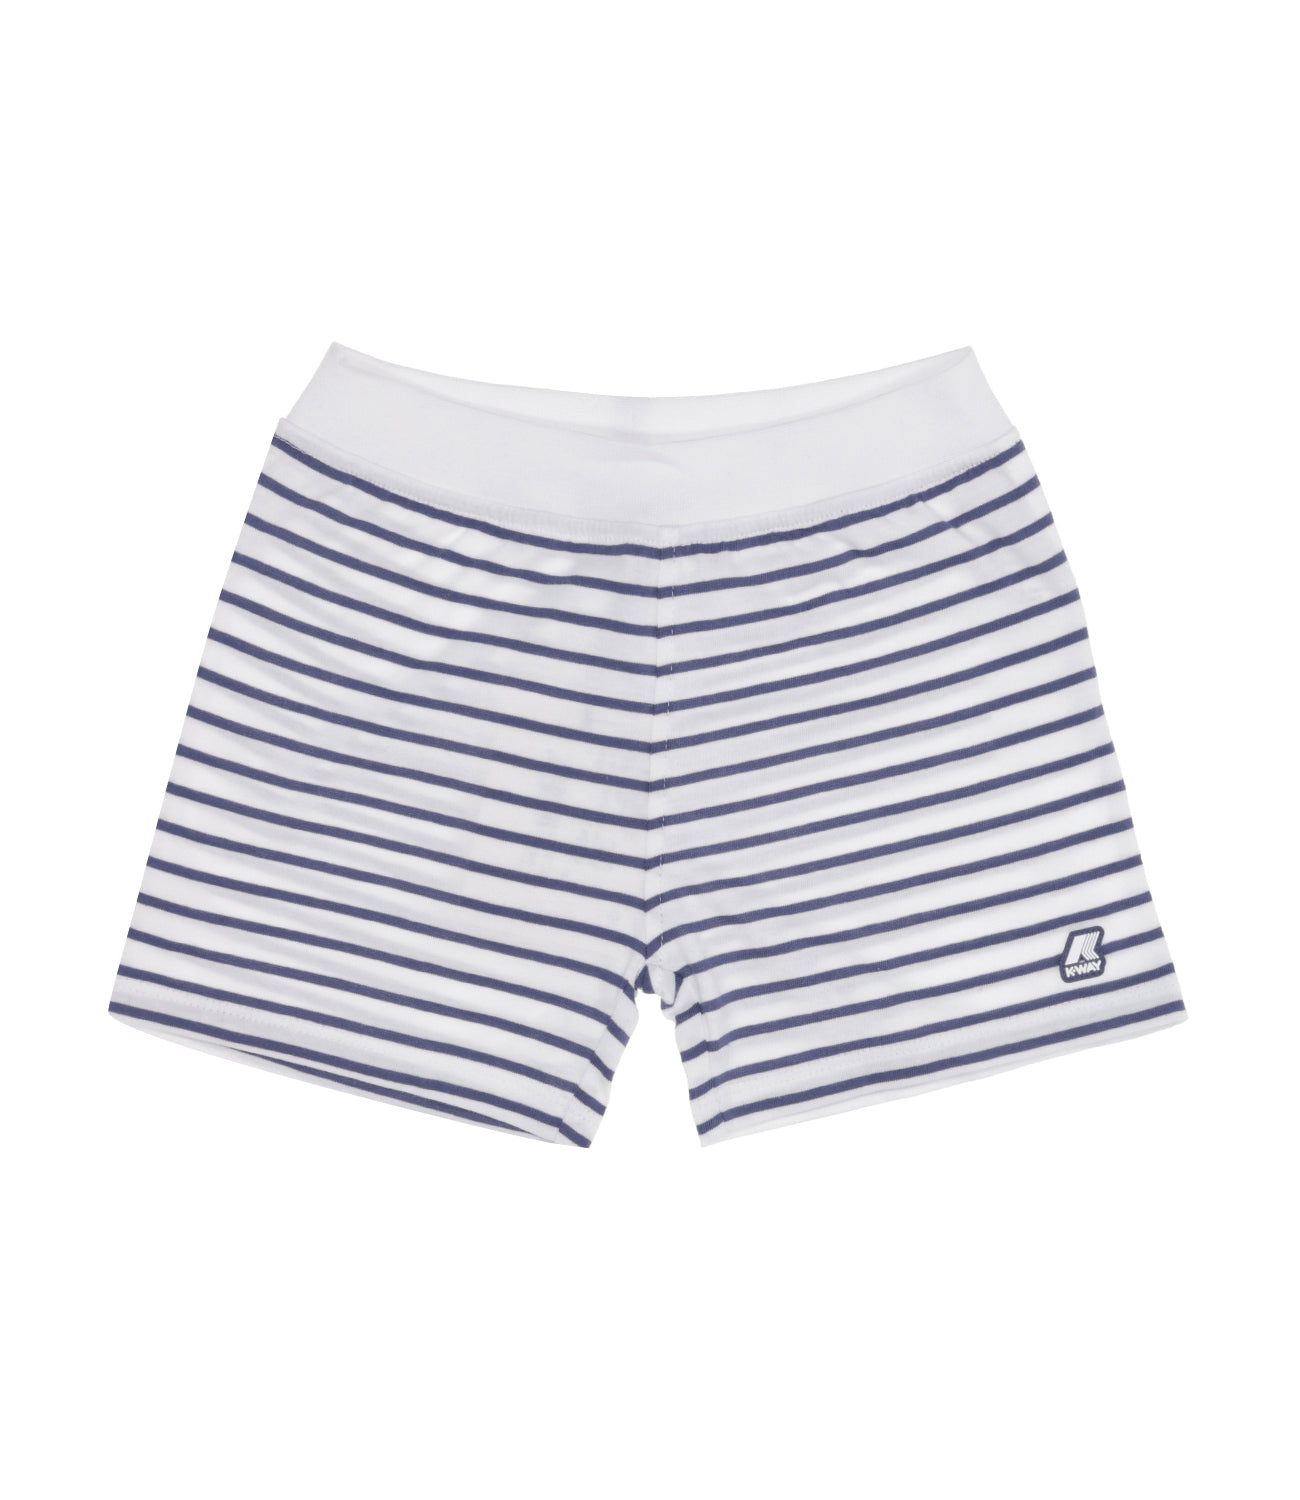 K-Way Kids | Shorts E. Noisette Stripes White and Blue